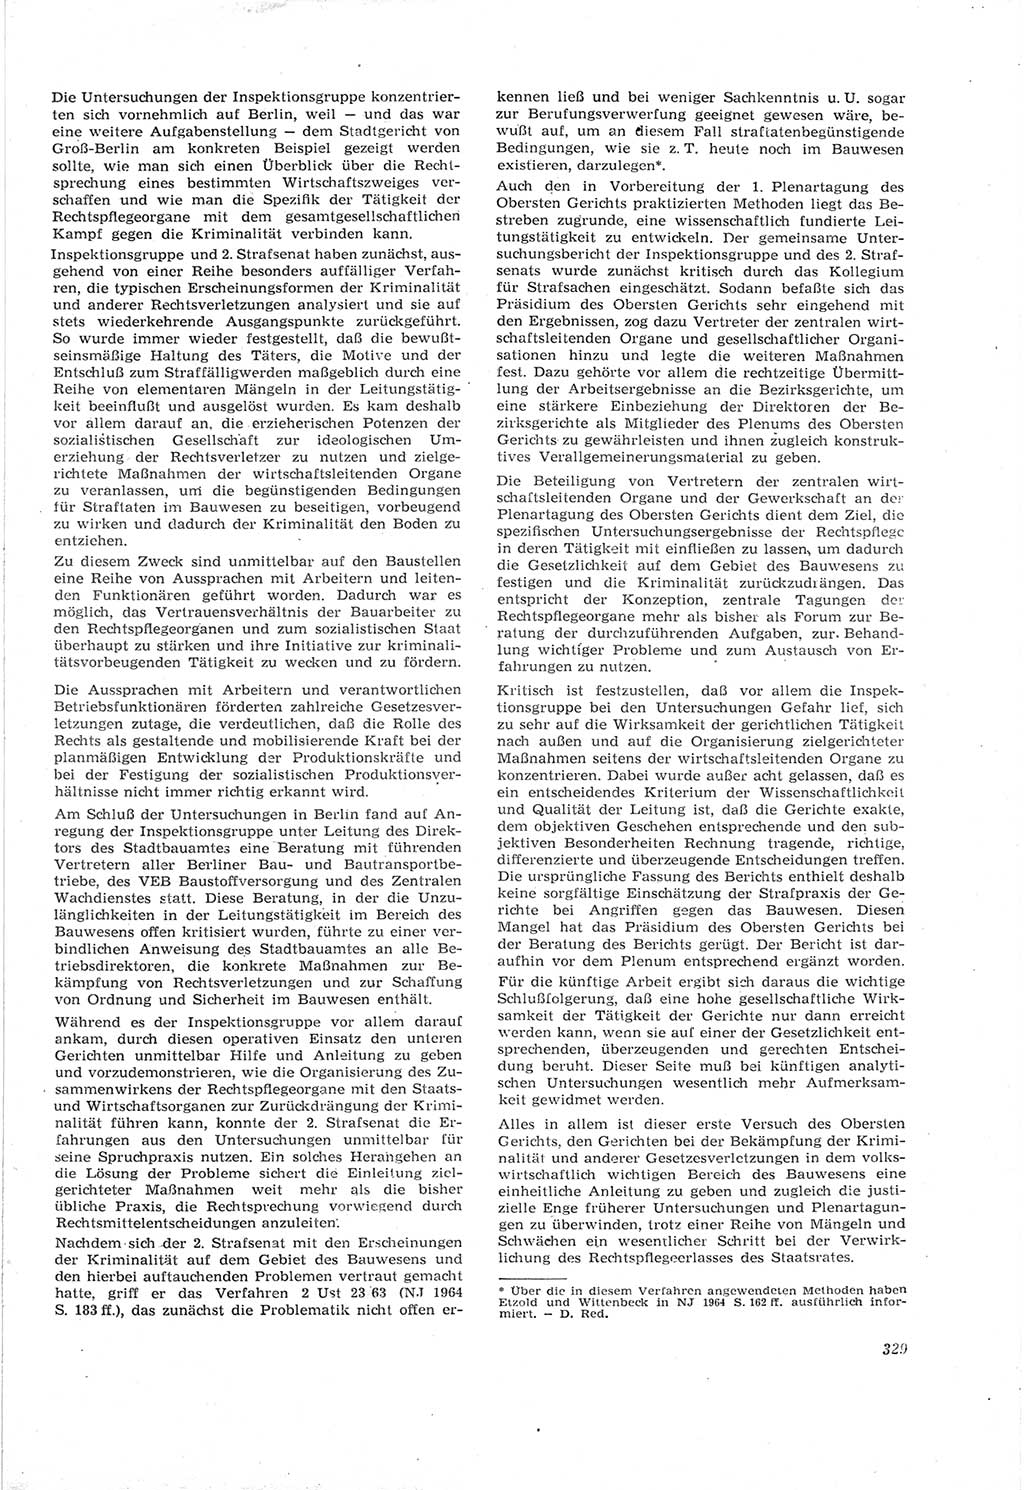 Neue Justiz (NJ), Zeitschrift für Recht und Rechtswissenschaft [Deutsche Demokratische Republik (DDR)], 18. Jahrgang 1964, Seite 329 (NJ DDR 1964, S. 329)